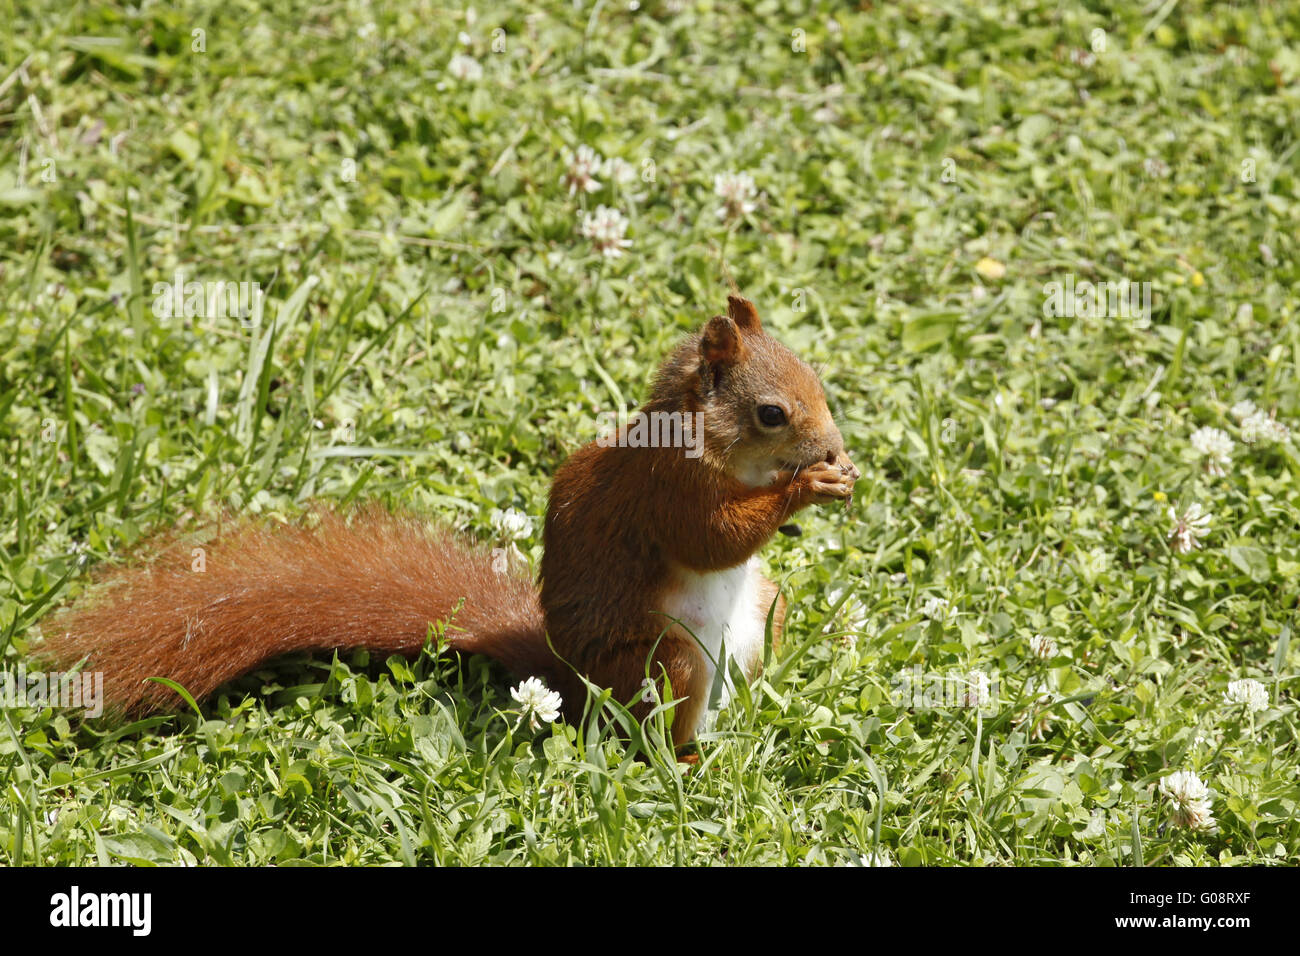 Red squirrel / Sciurus vulgaris on the lawn Stock Photo